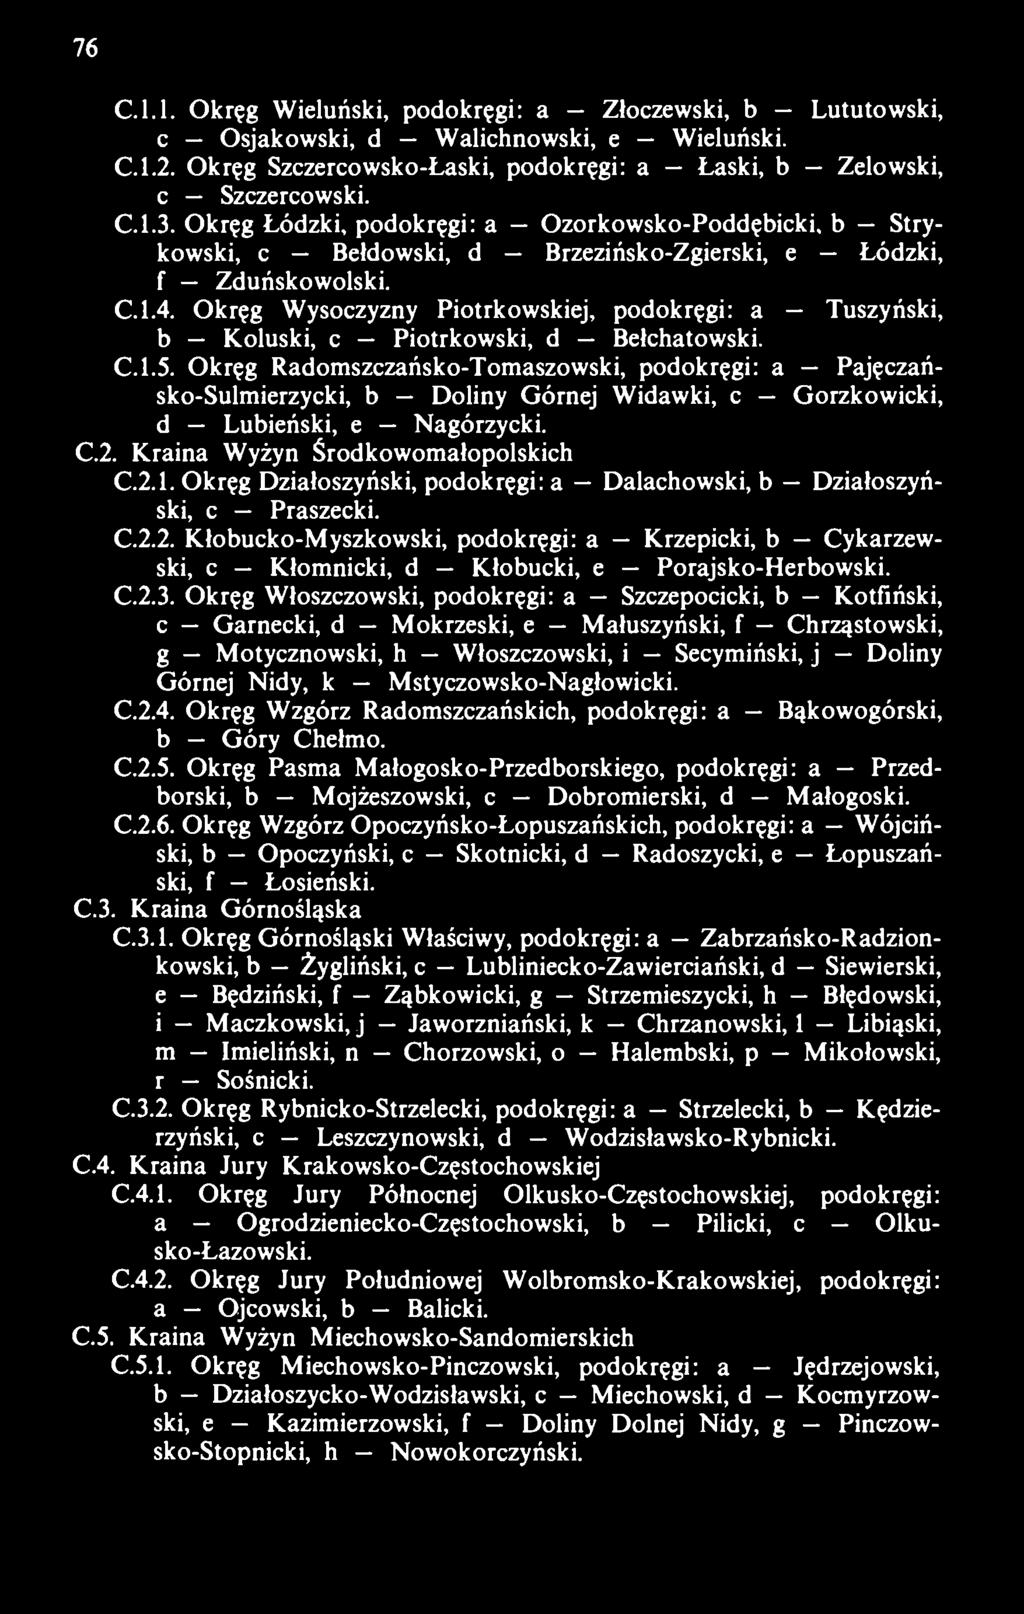 Okręg Wysoczyzny Piotrkowskiej, podokręgi: a Tuszyński, b Koluski, c Piotrkowski, d Bełchatowski. C.1.5.